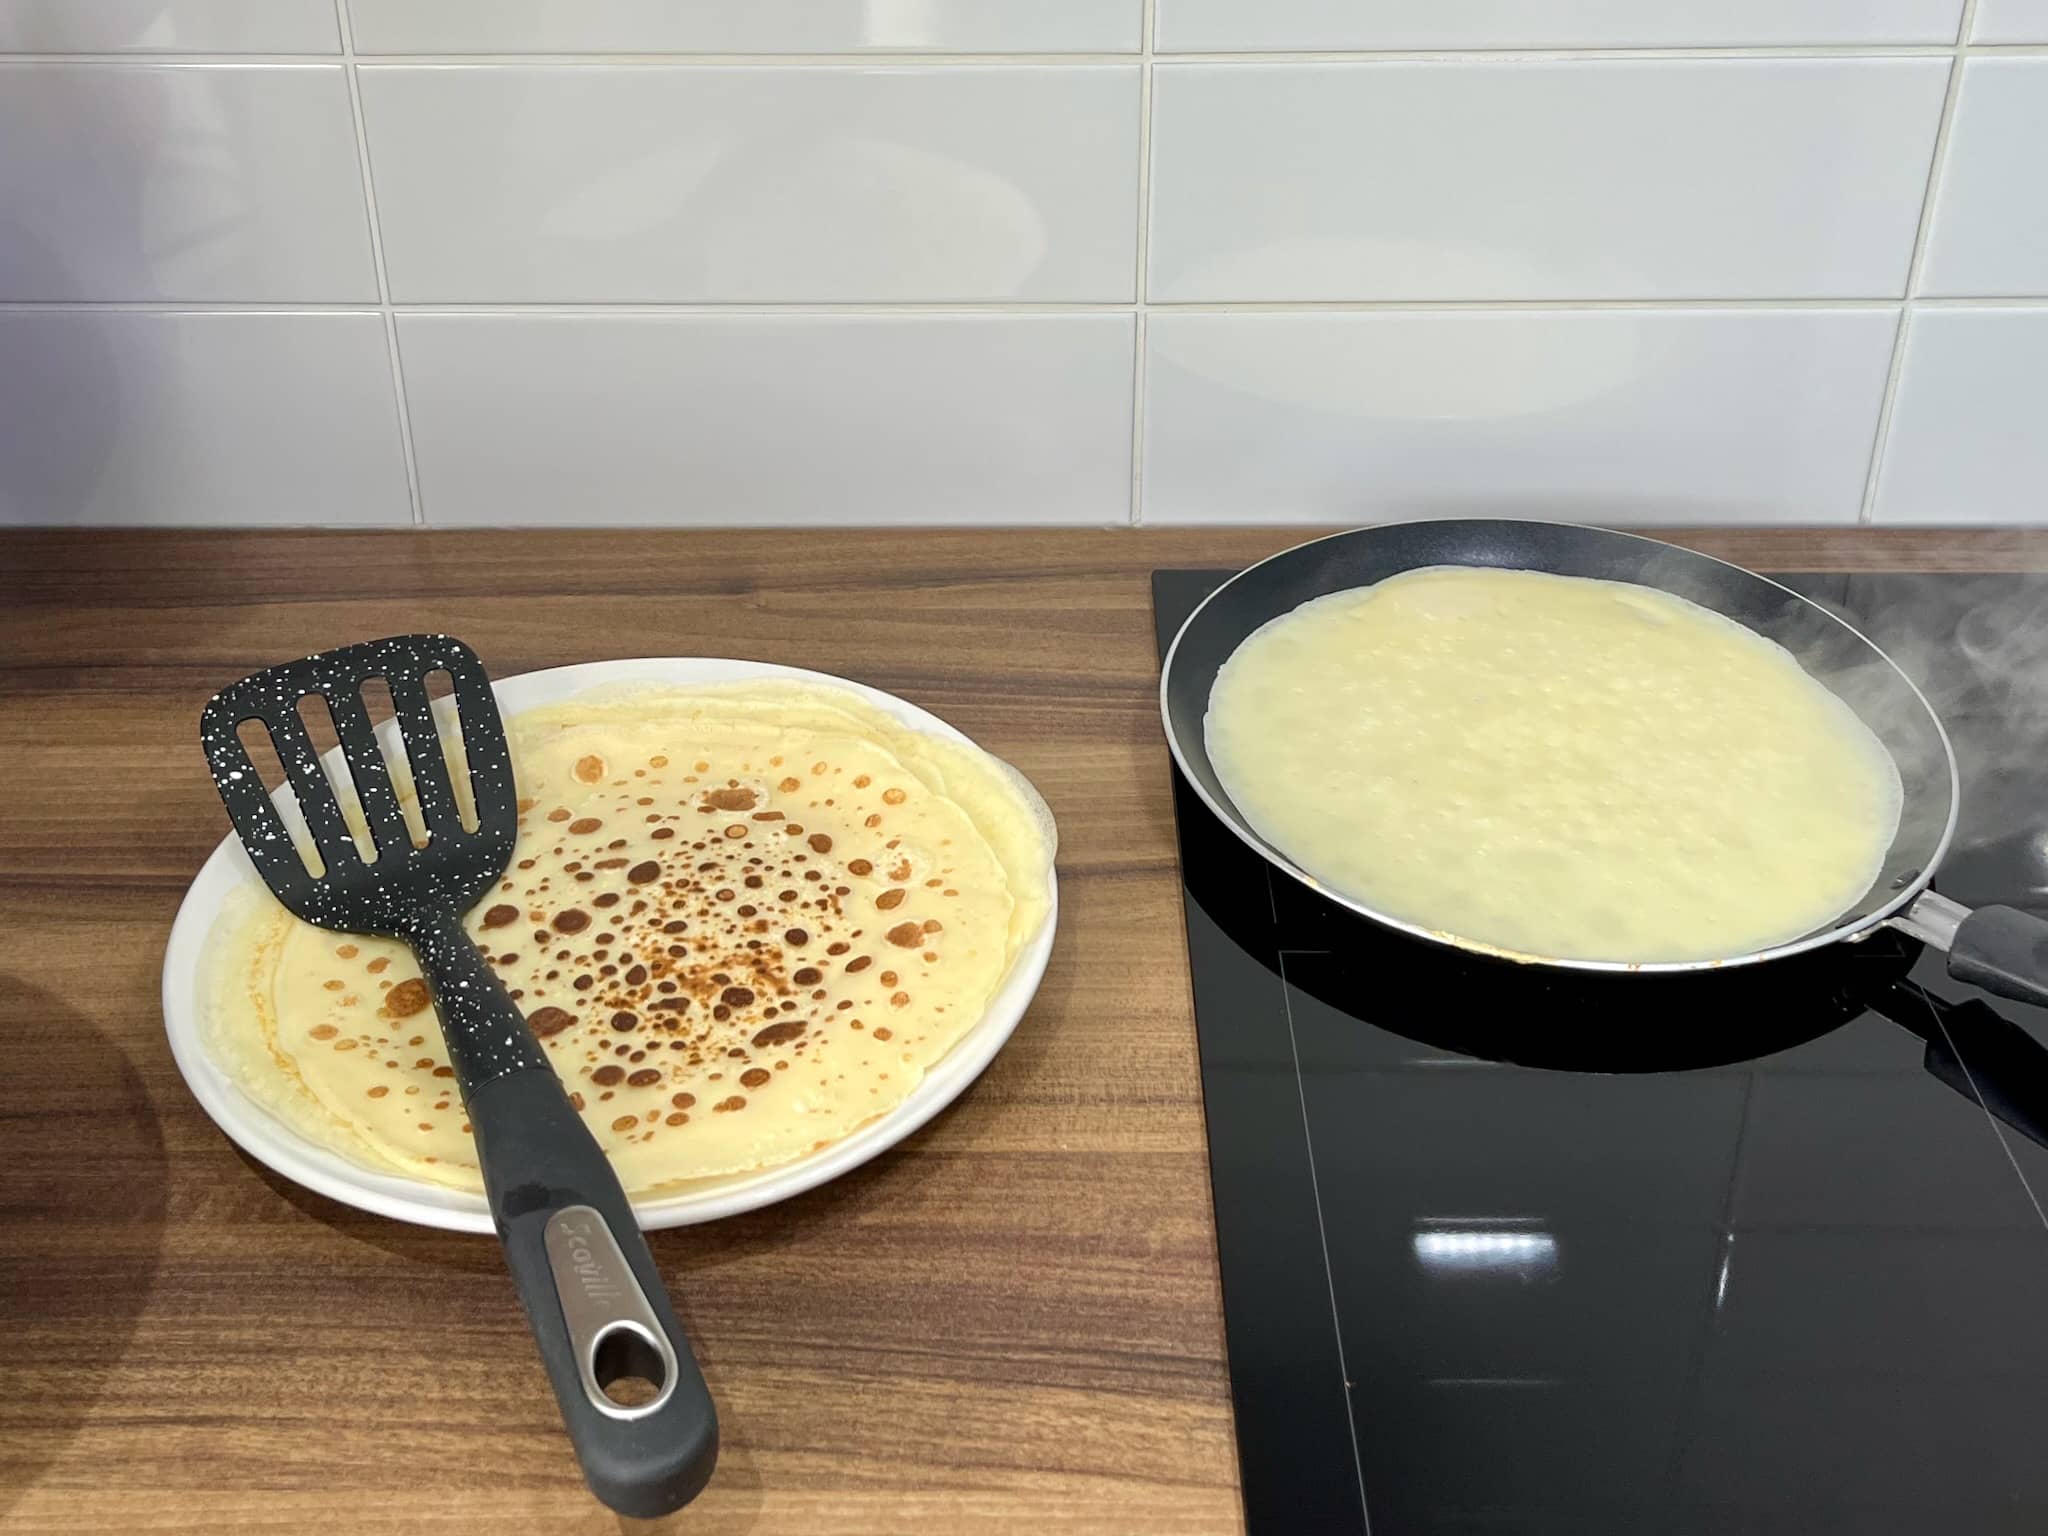 Crêpes frying on the pan